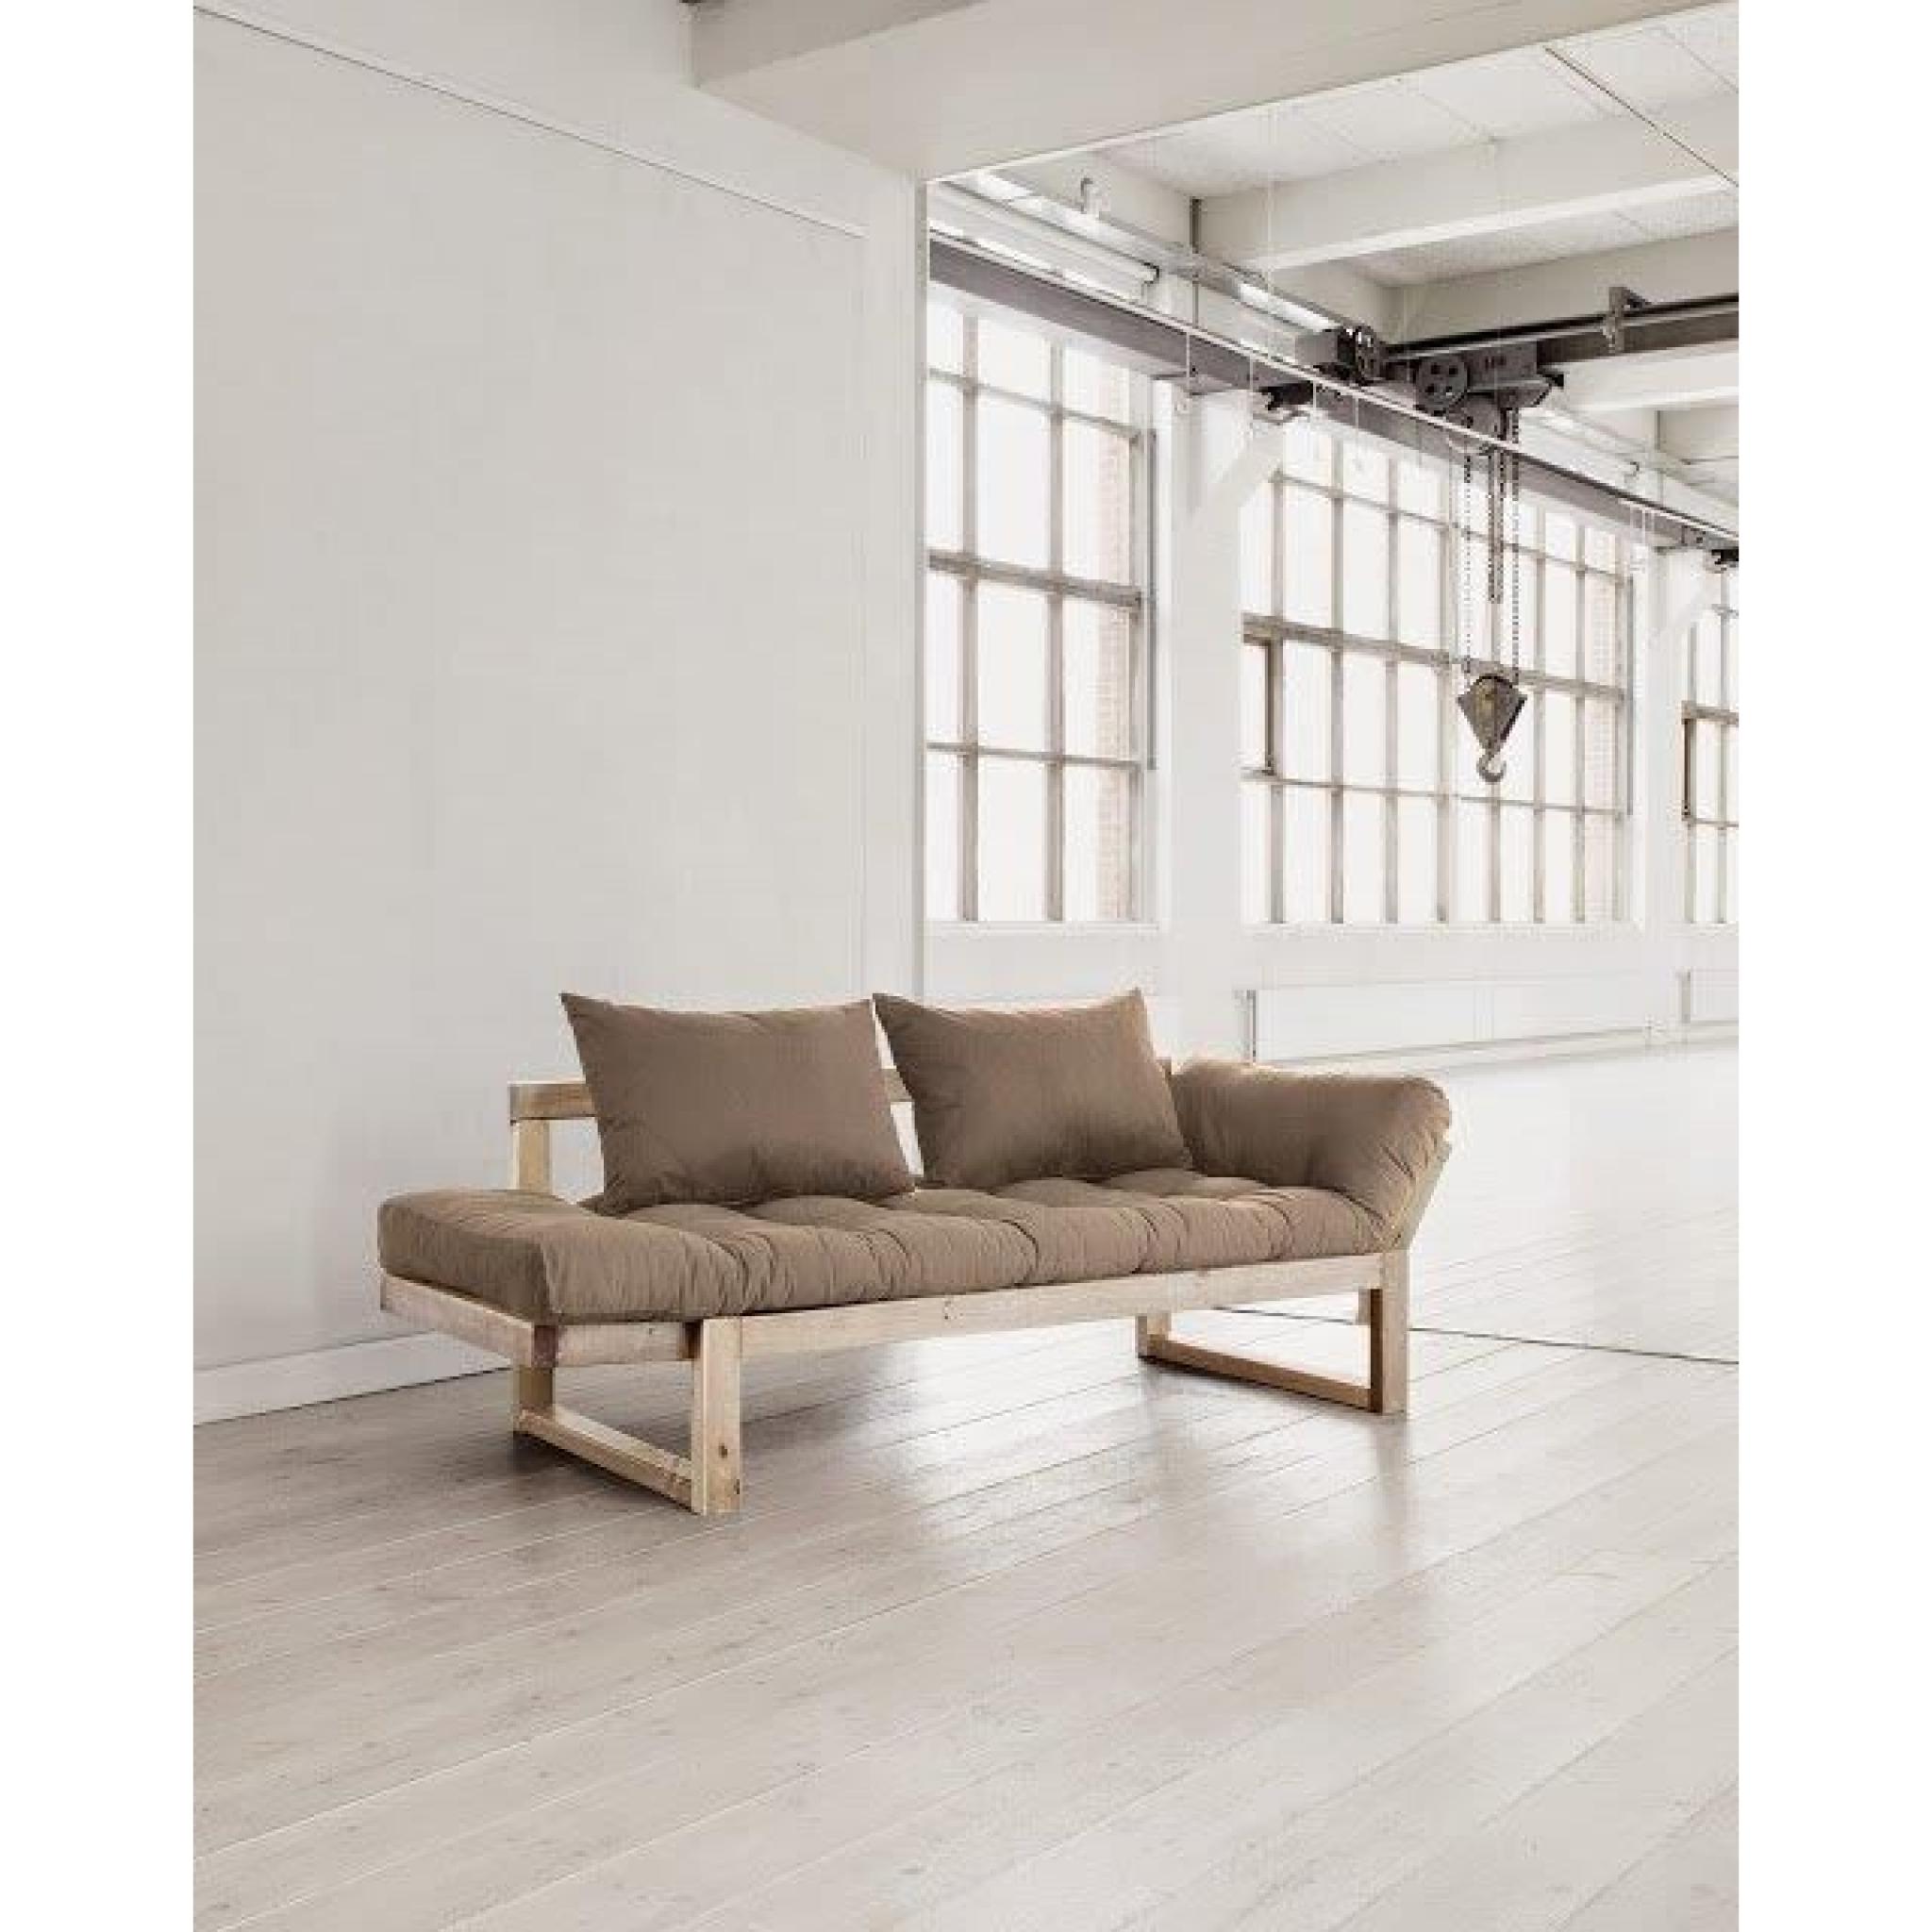 Banquette méridienne style scandinave futon taupe EDGE couchage 75*200cm